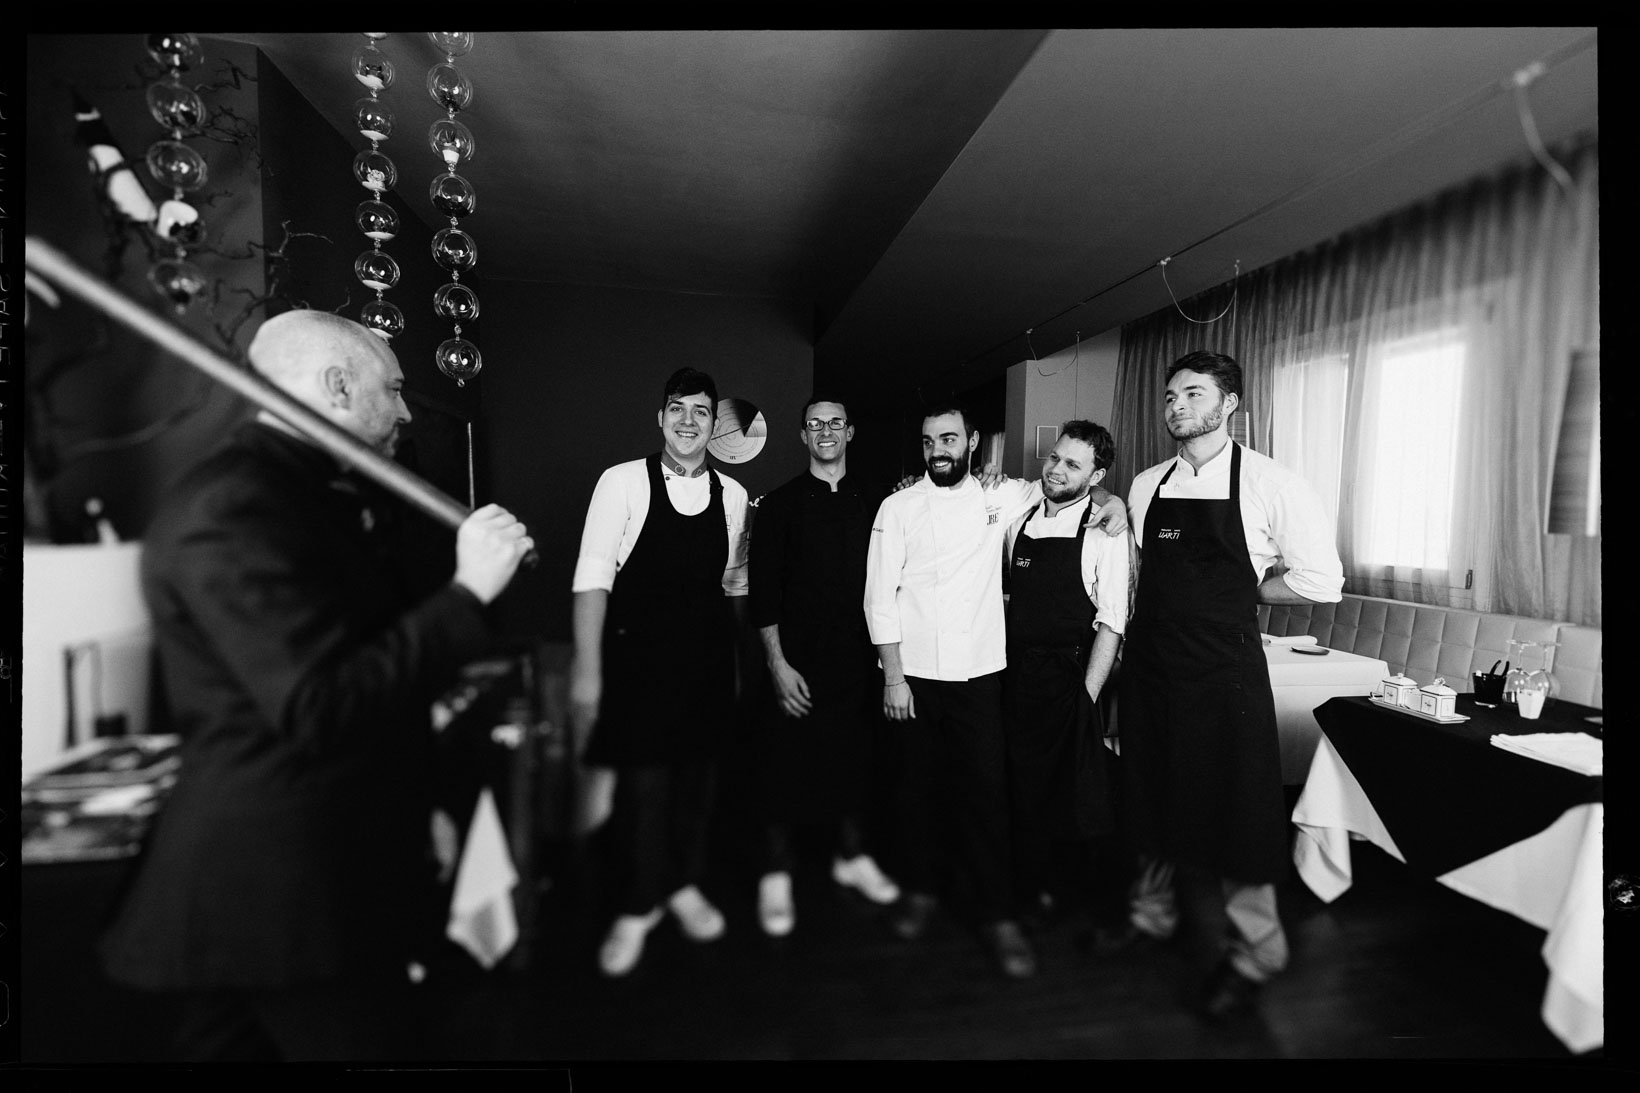 Rui-Lorenzo-Fotografo-food-chef-alberto-basso-ristorante-3-quarti-grancona-vi-_RUI7484_p_bw_web